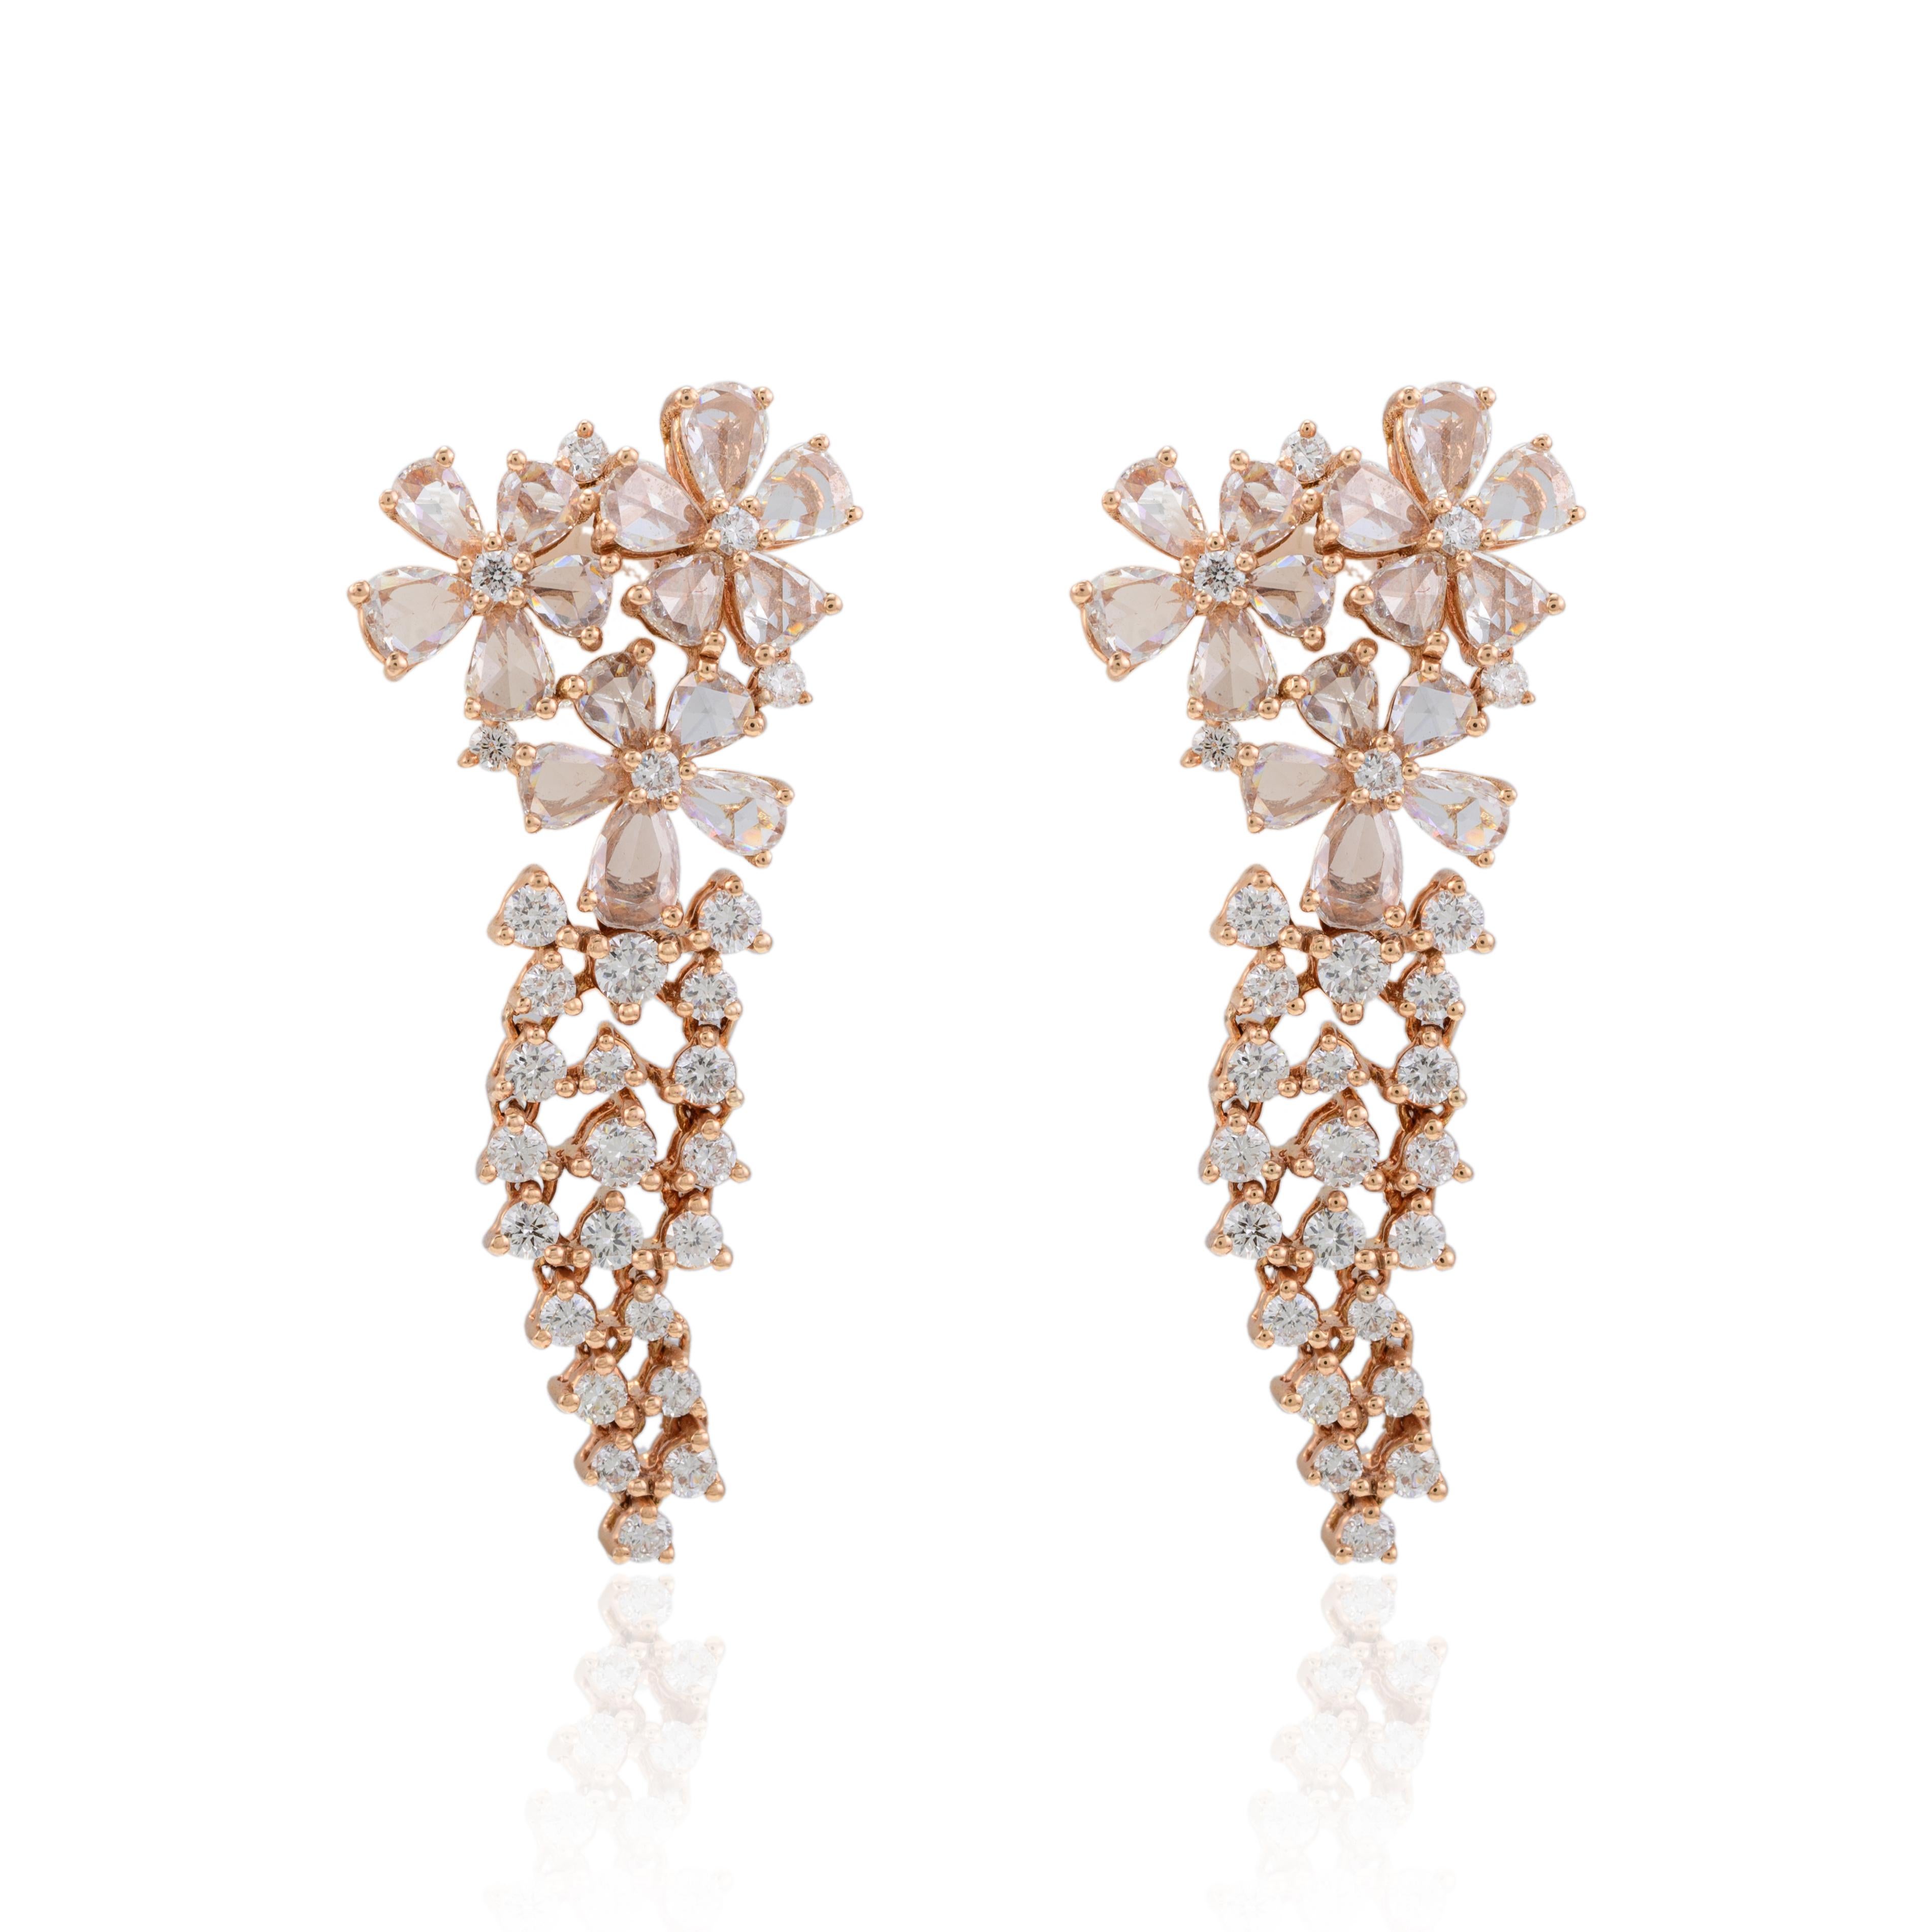 Modernist 14k Solid Rose Gold Diamond Chandelier Earrings For Women, Fine Jewelry For Sale